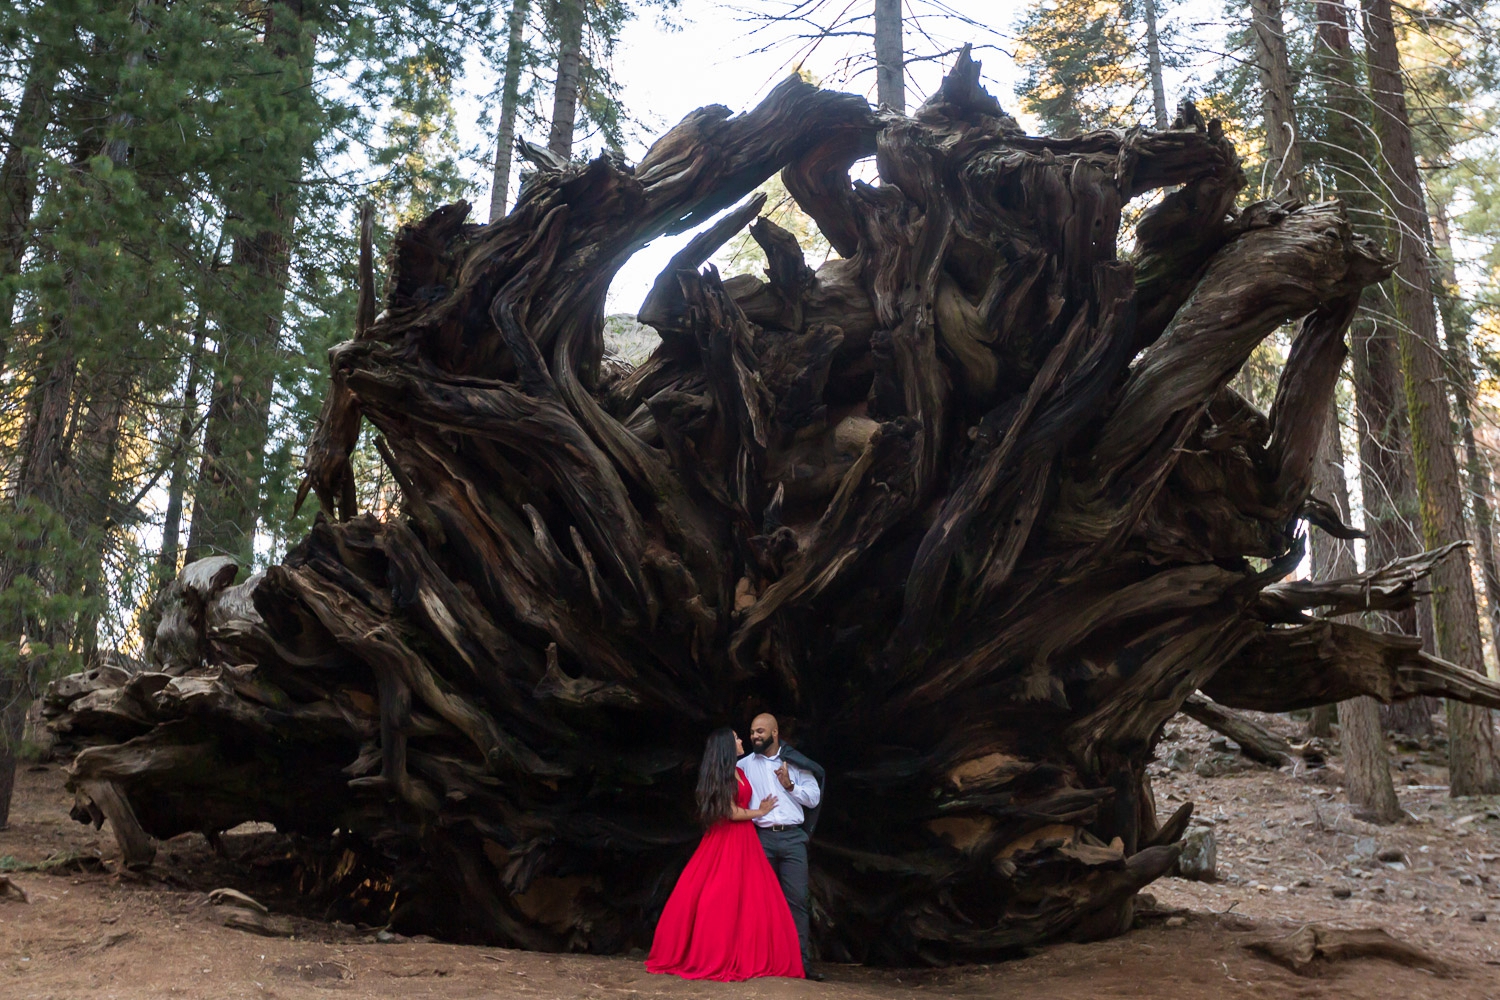 Romantic Sequoia Tree Engagement Photography